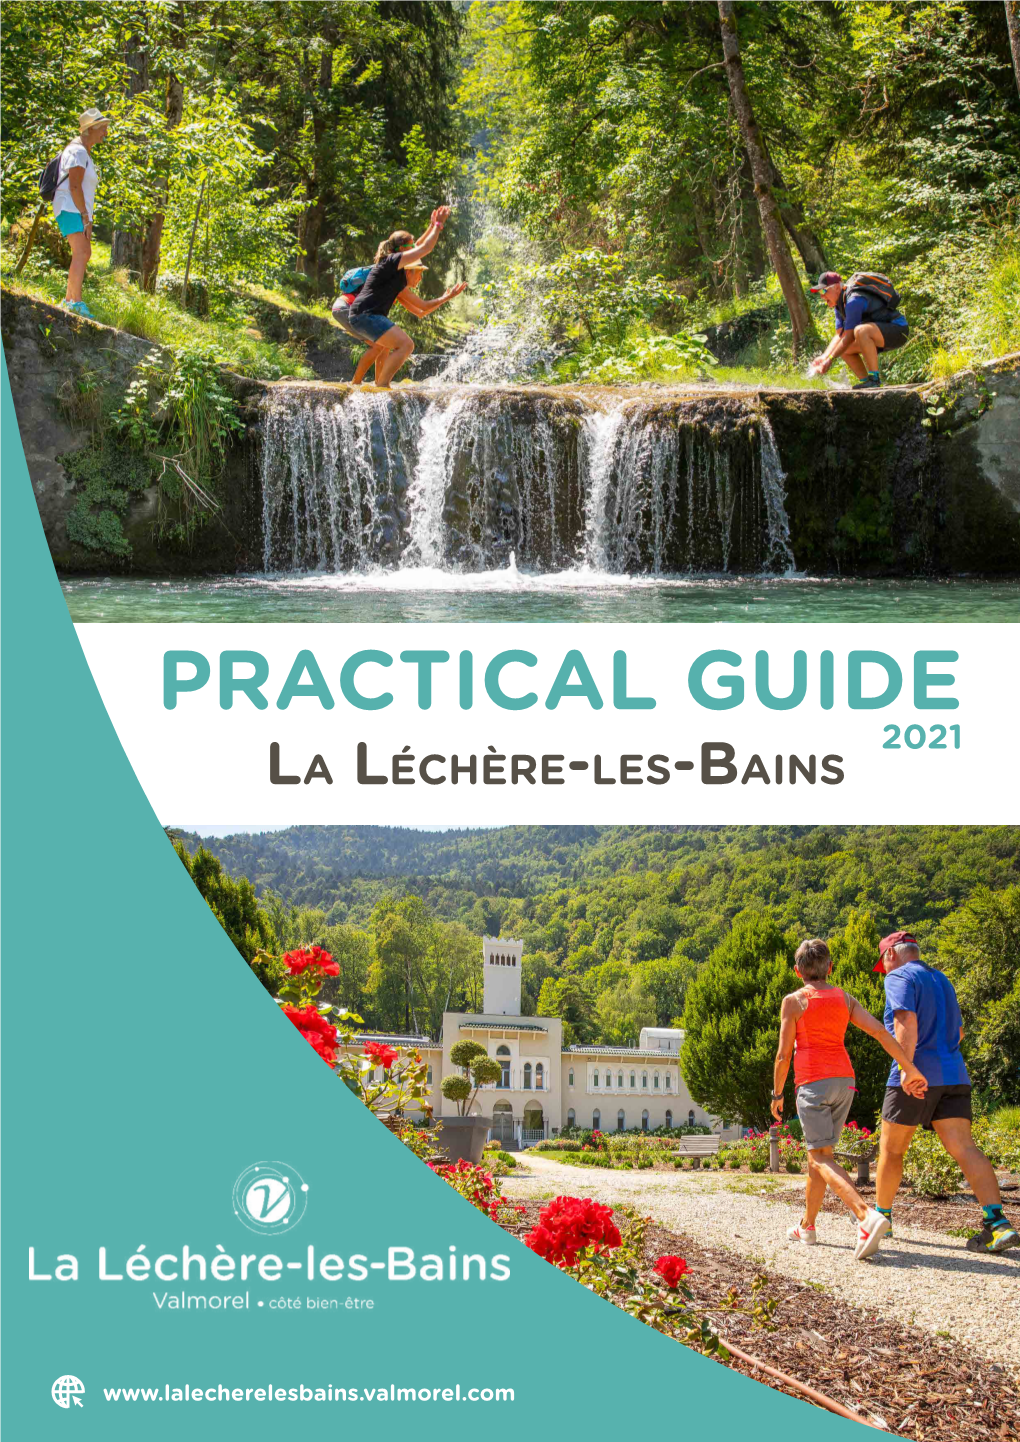 Download the Practical Guide of La Léchère-Les-Bains